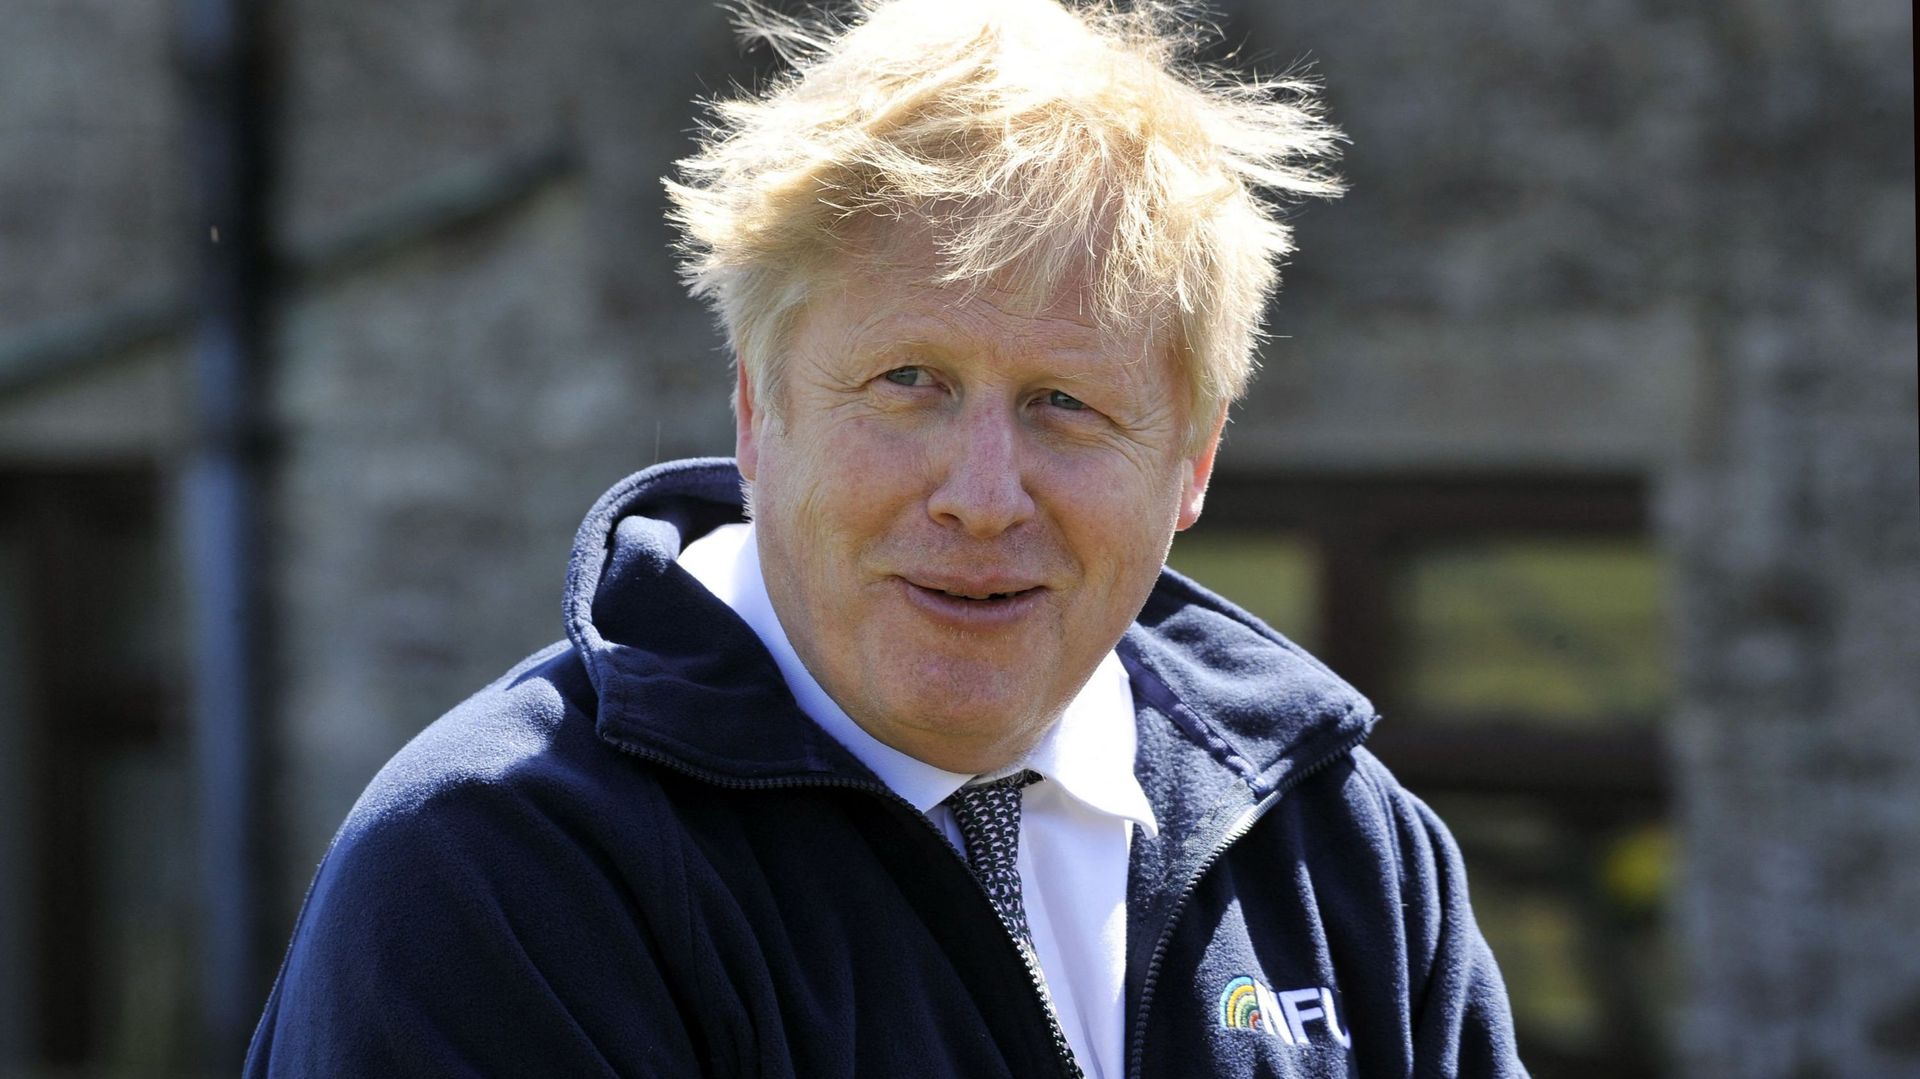 Rénovation de son appartement: l'opposition britannique demande une enquête sur des dépenses de Boris Johnson